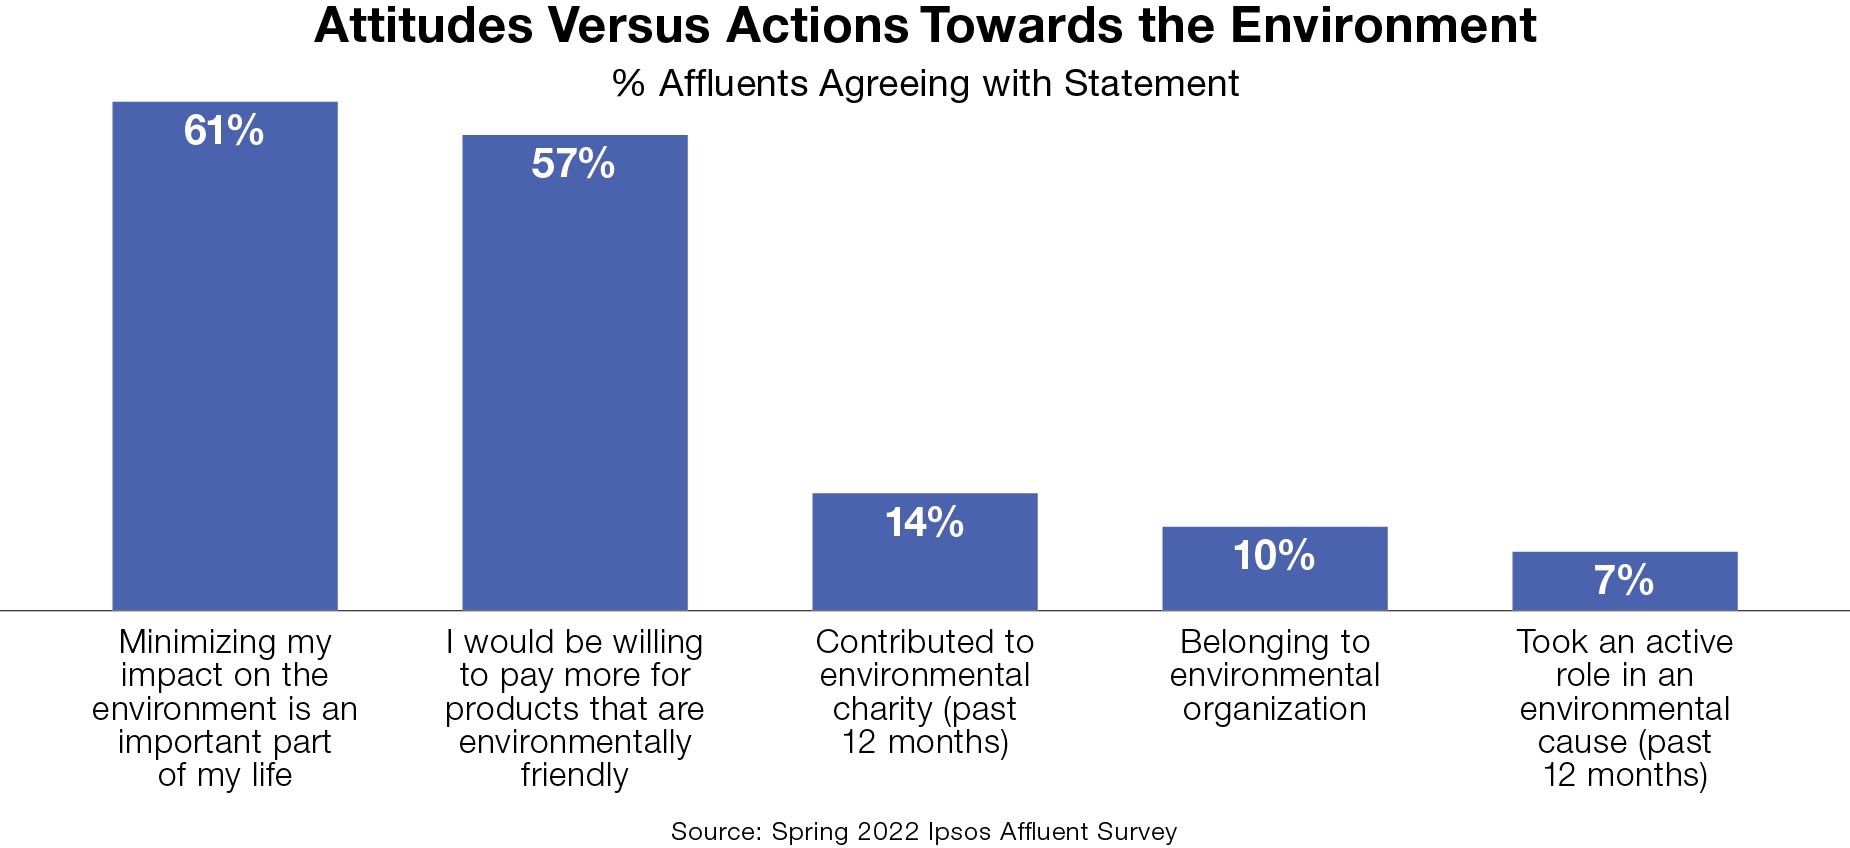 Attitudes versus actions of environmentalist